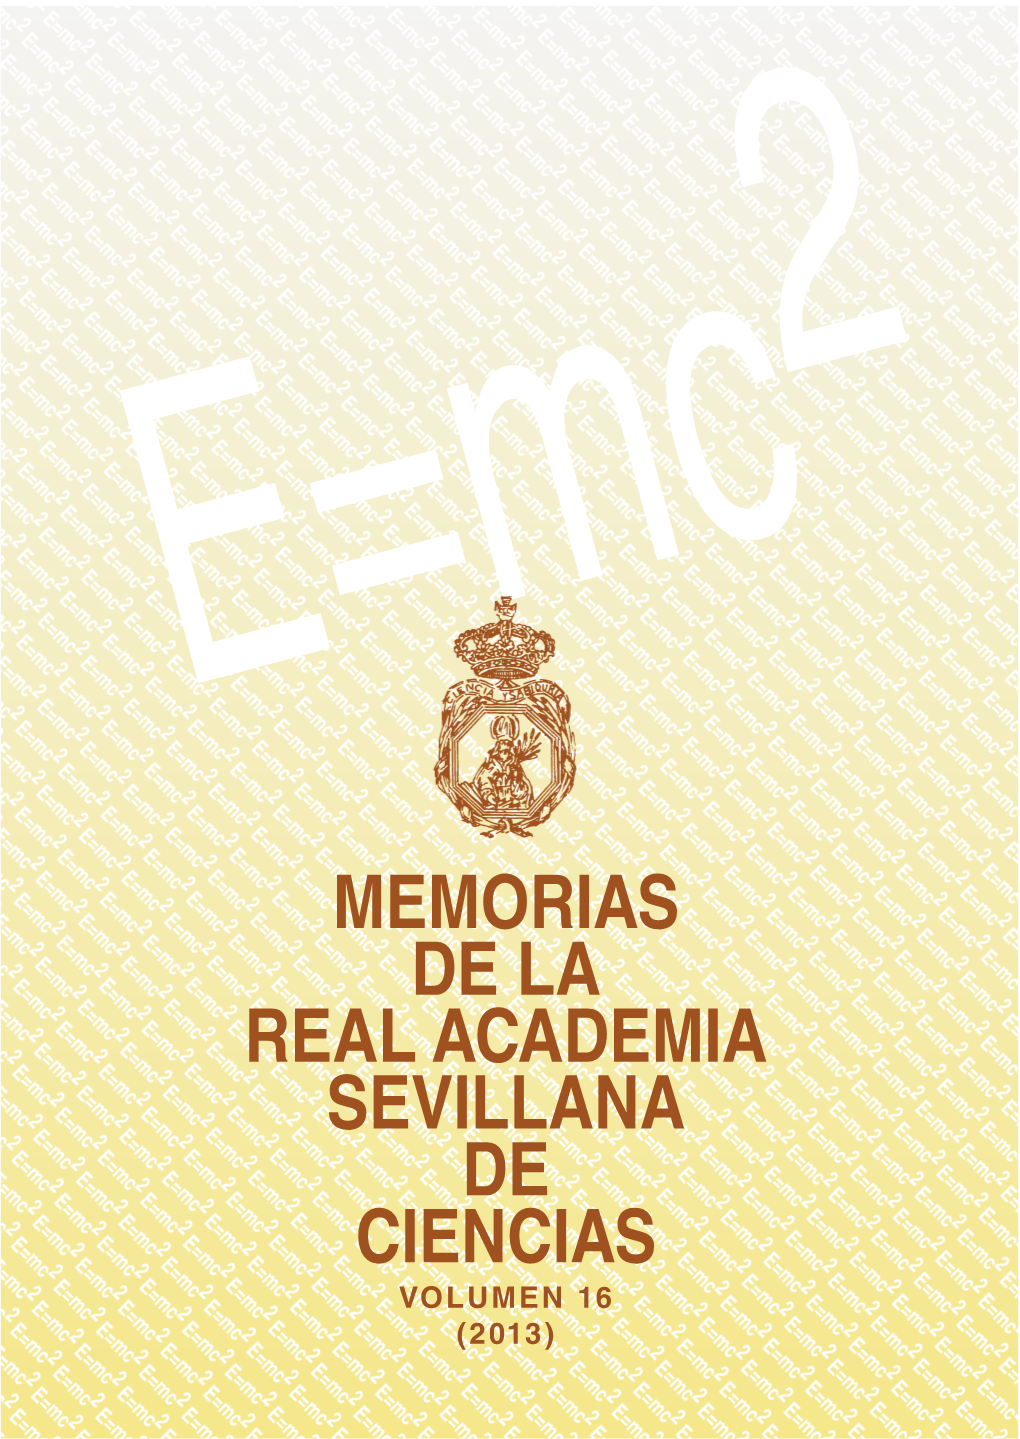 MEMORIAS DE LA REAL ACADEMIA SEVILLANA DE CIENCIAS VOLUMEN 16 (2013) 1 Real Academia Sevillana De Ciencias - Memorias 2013